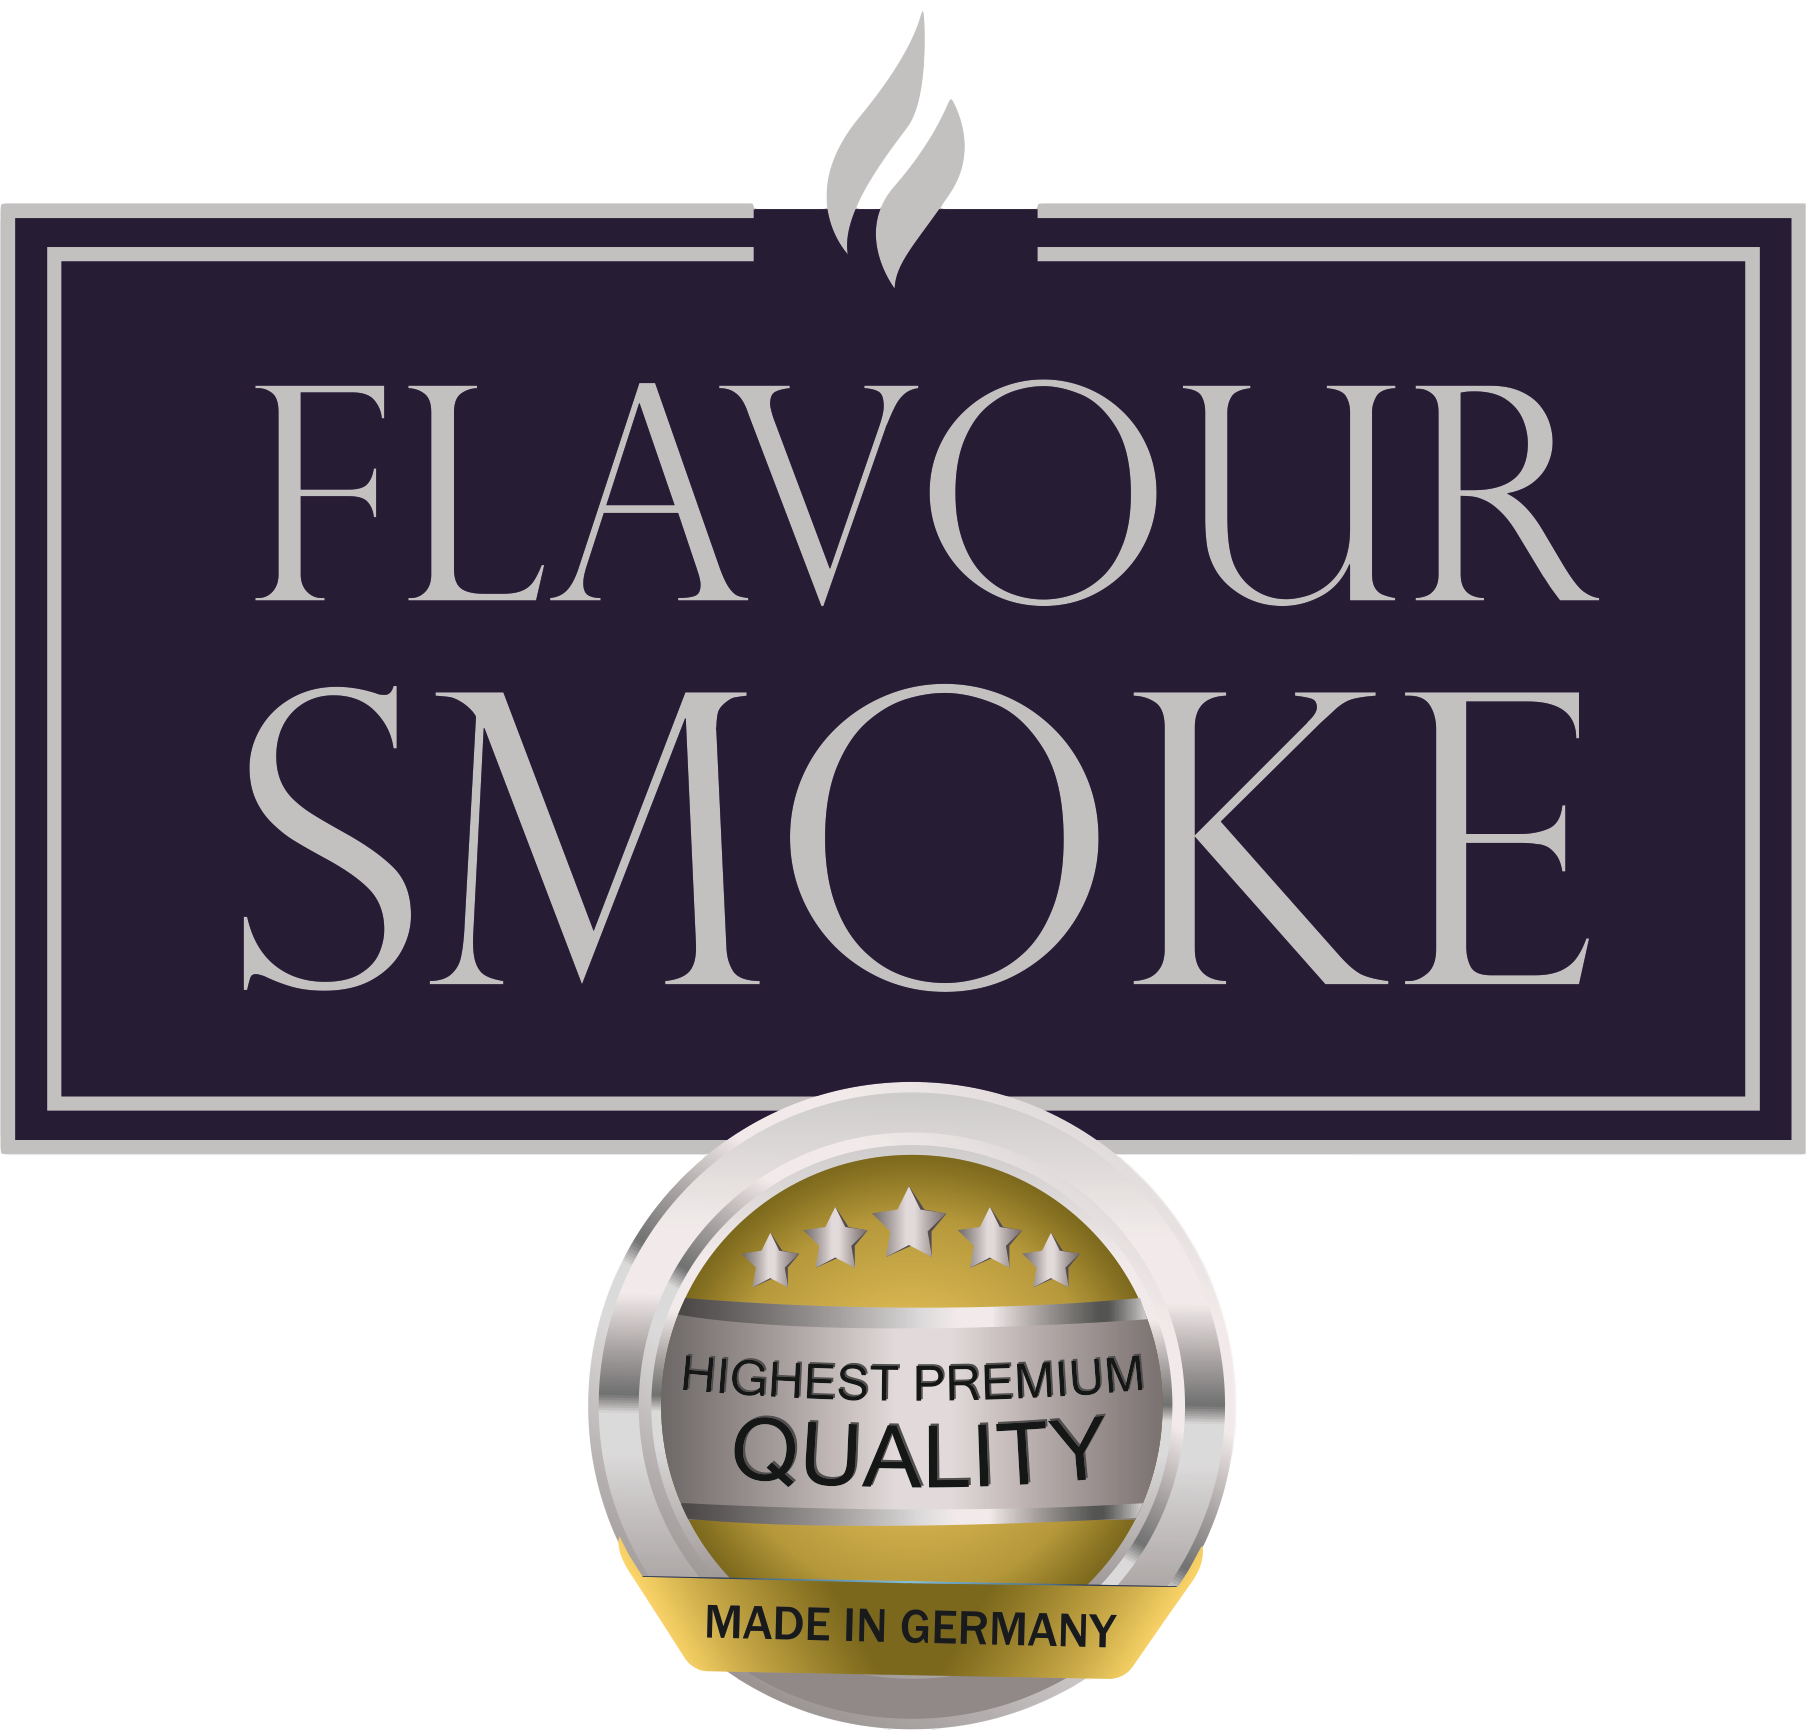 Flavour Smoke